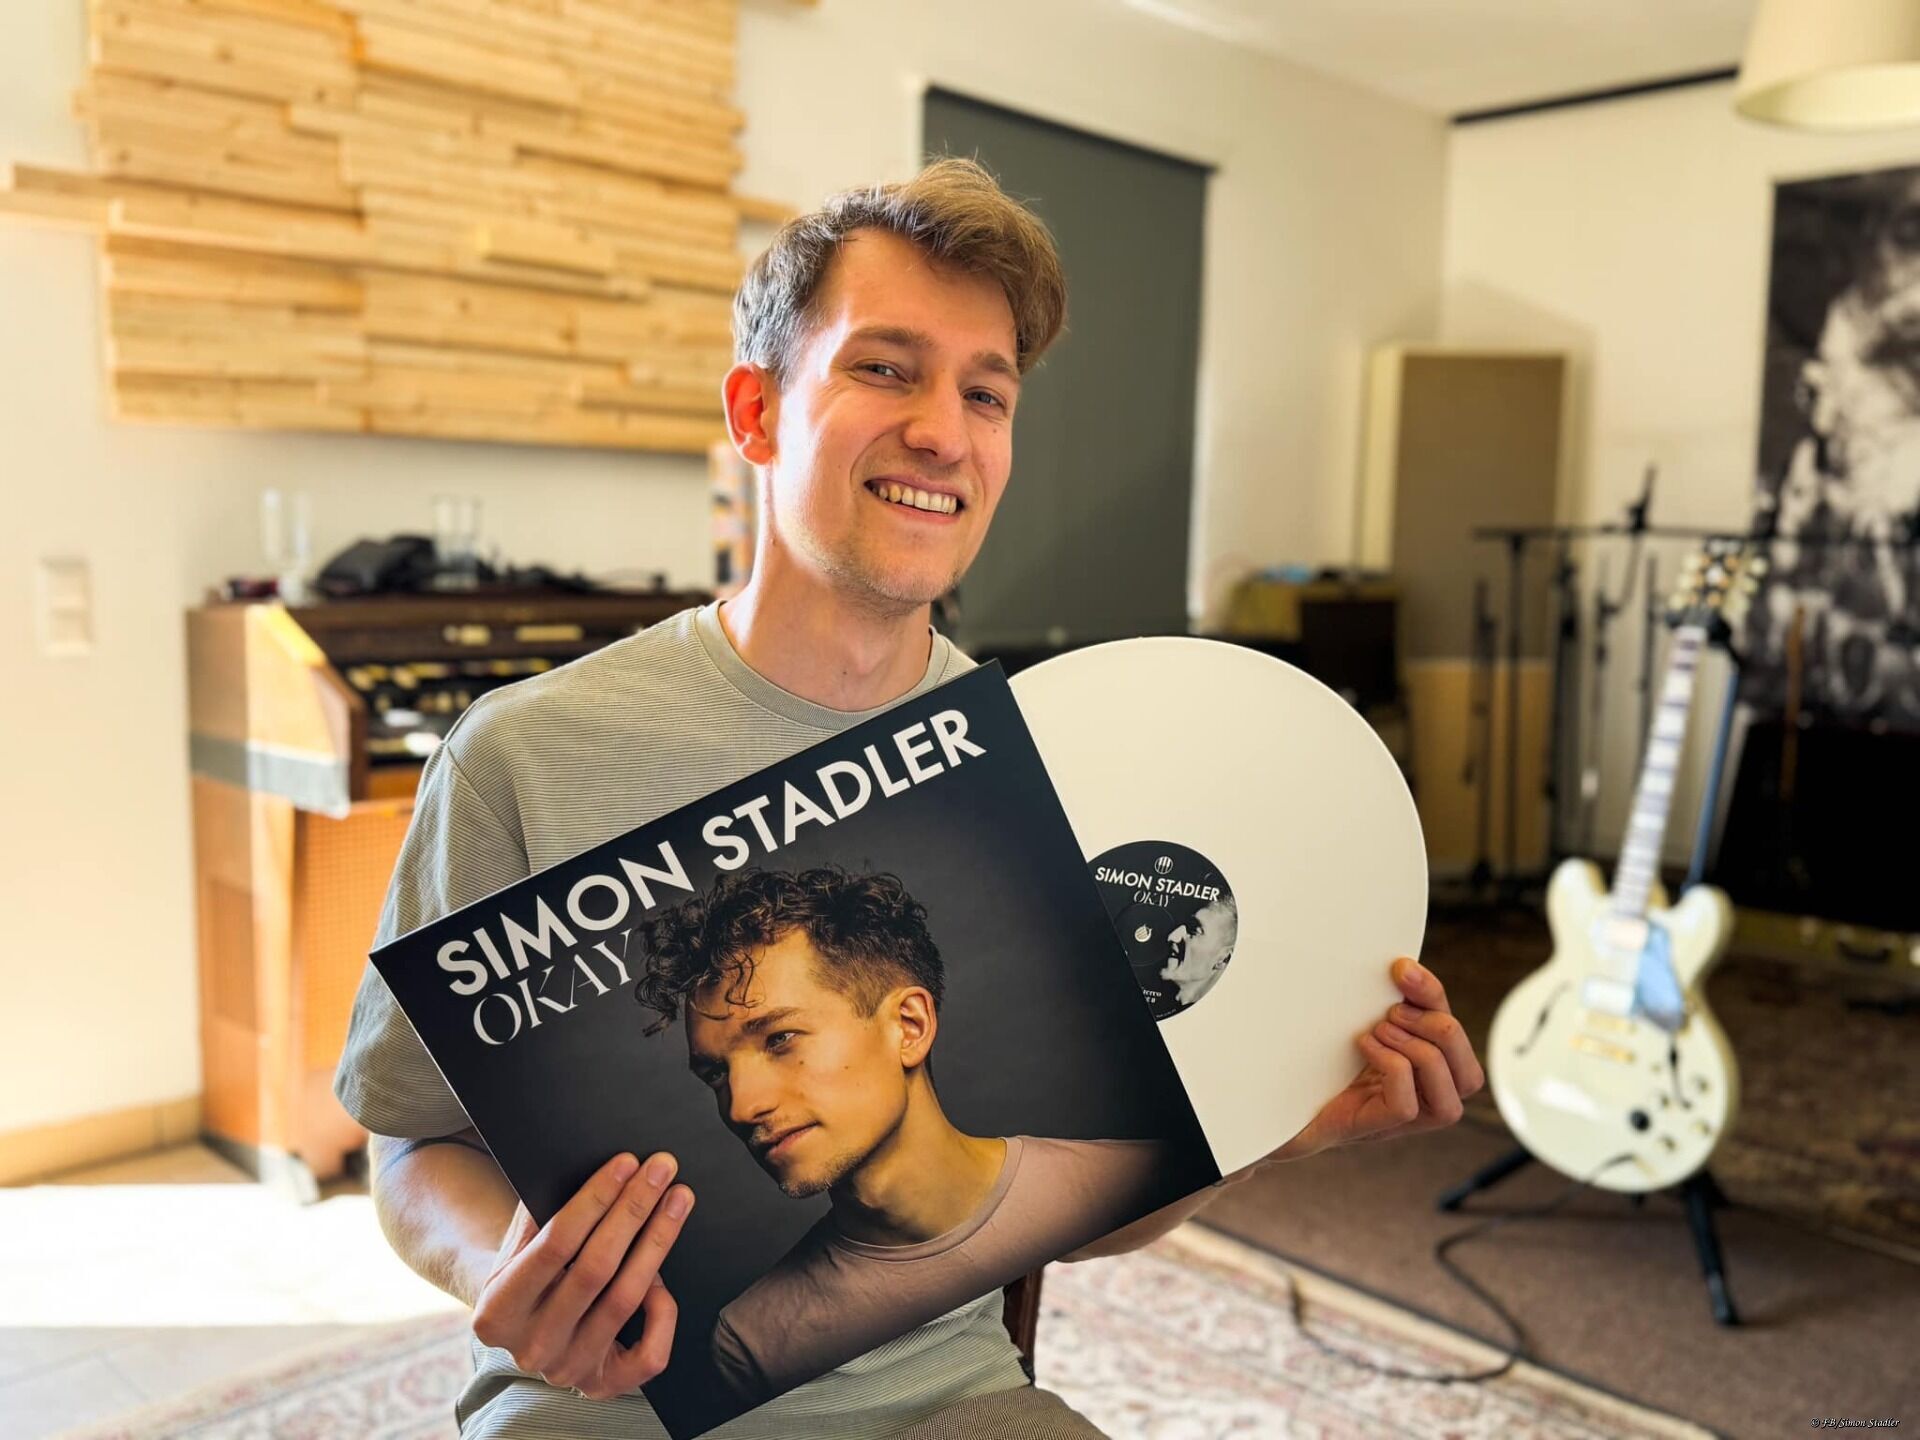 Simon Stadler